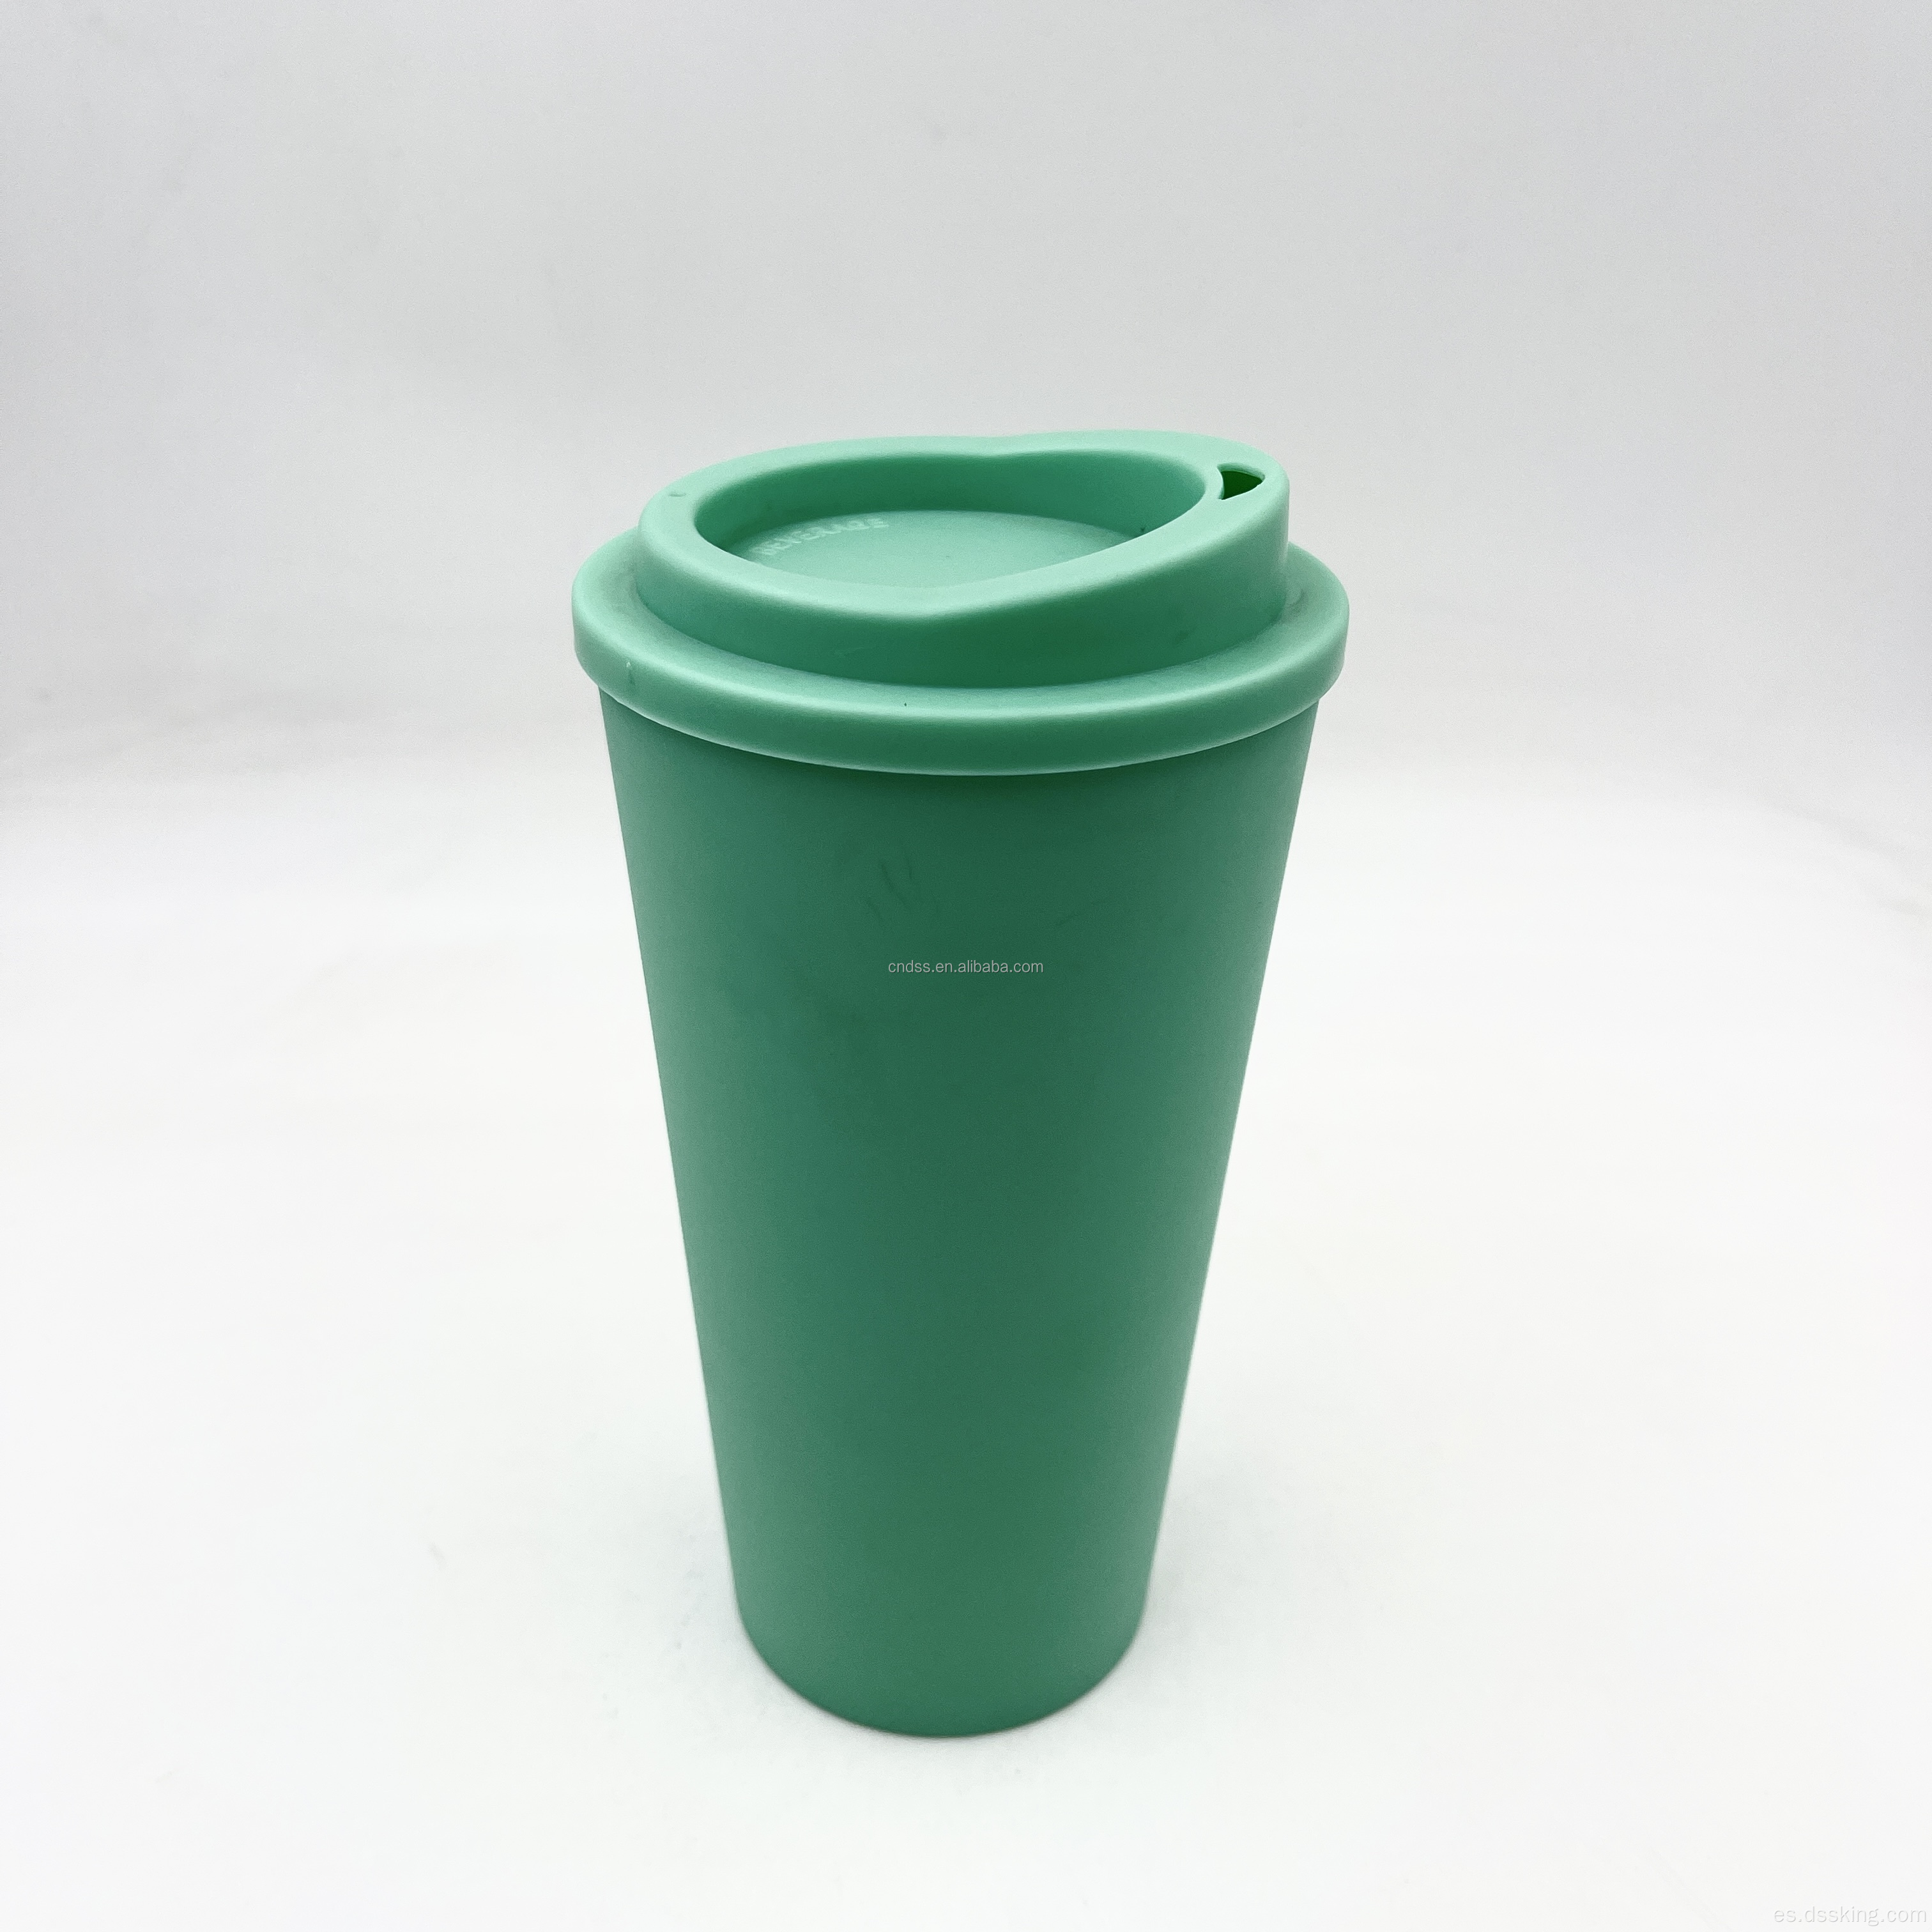 Taza de viaje PP de doble pared 16 oz 500 ml de copas de plástico taza de café reutilizable con tapas